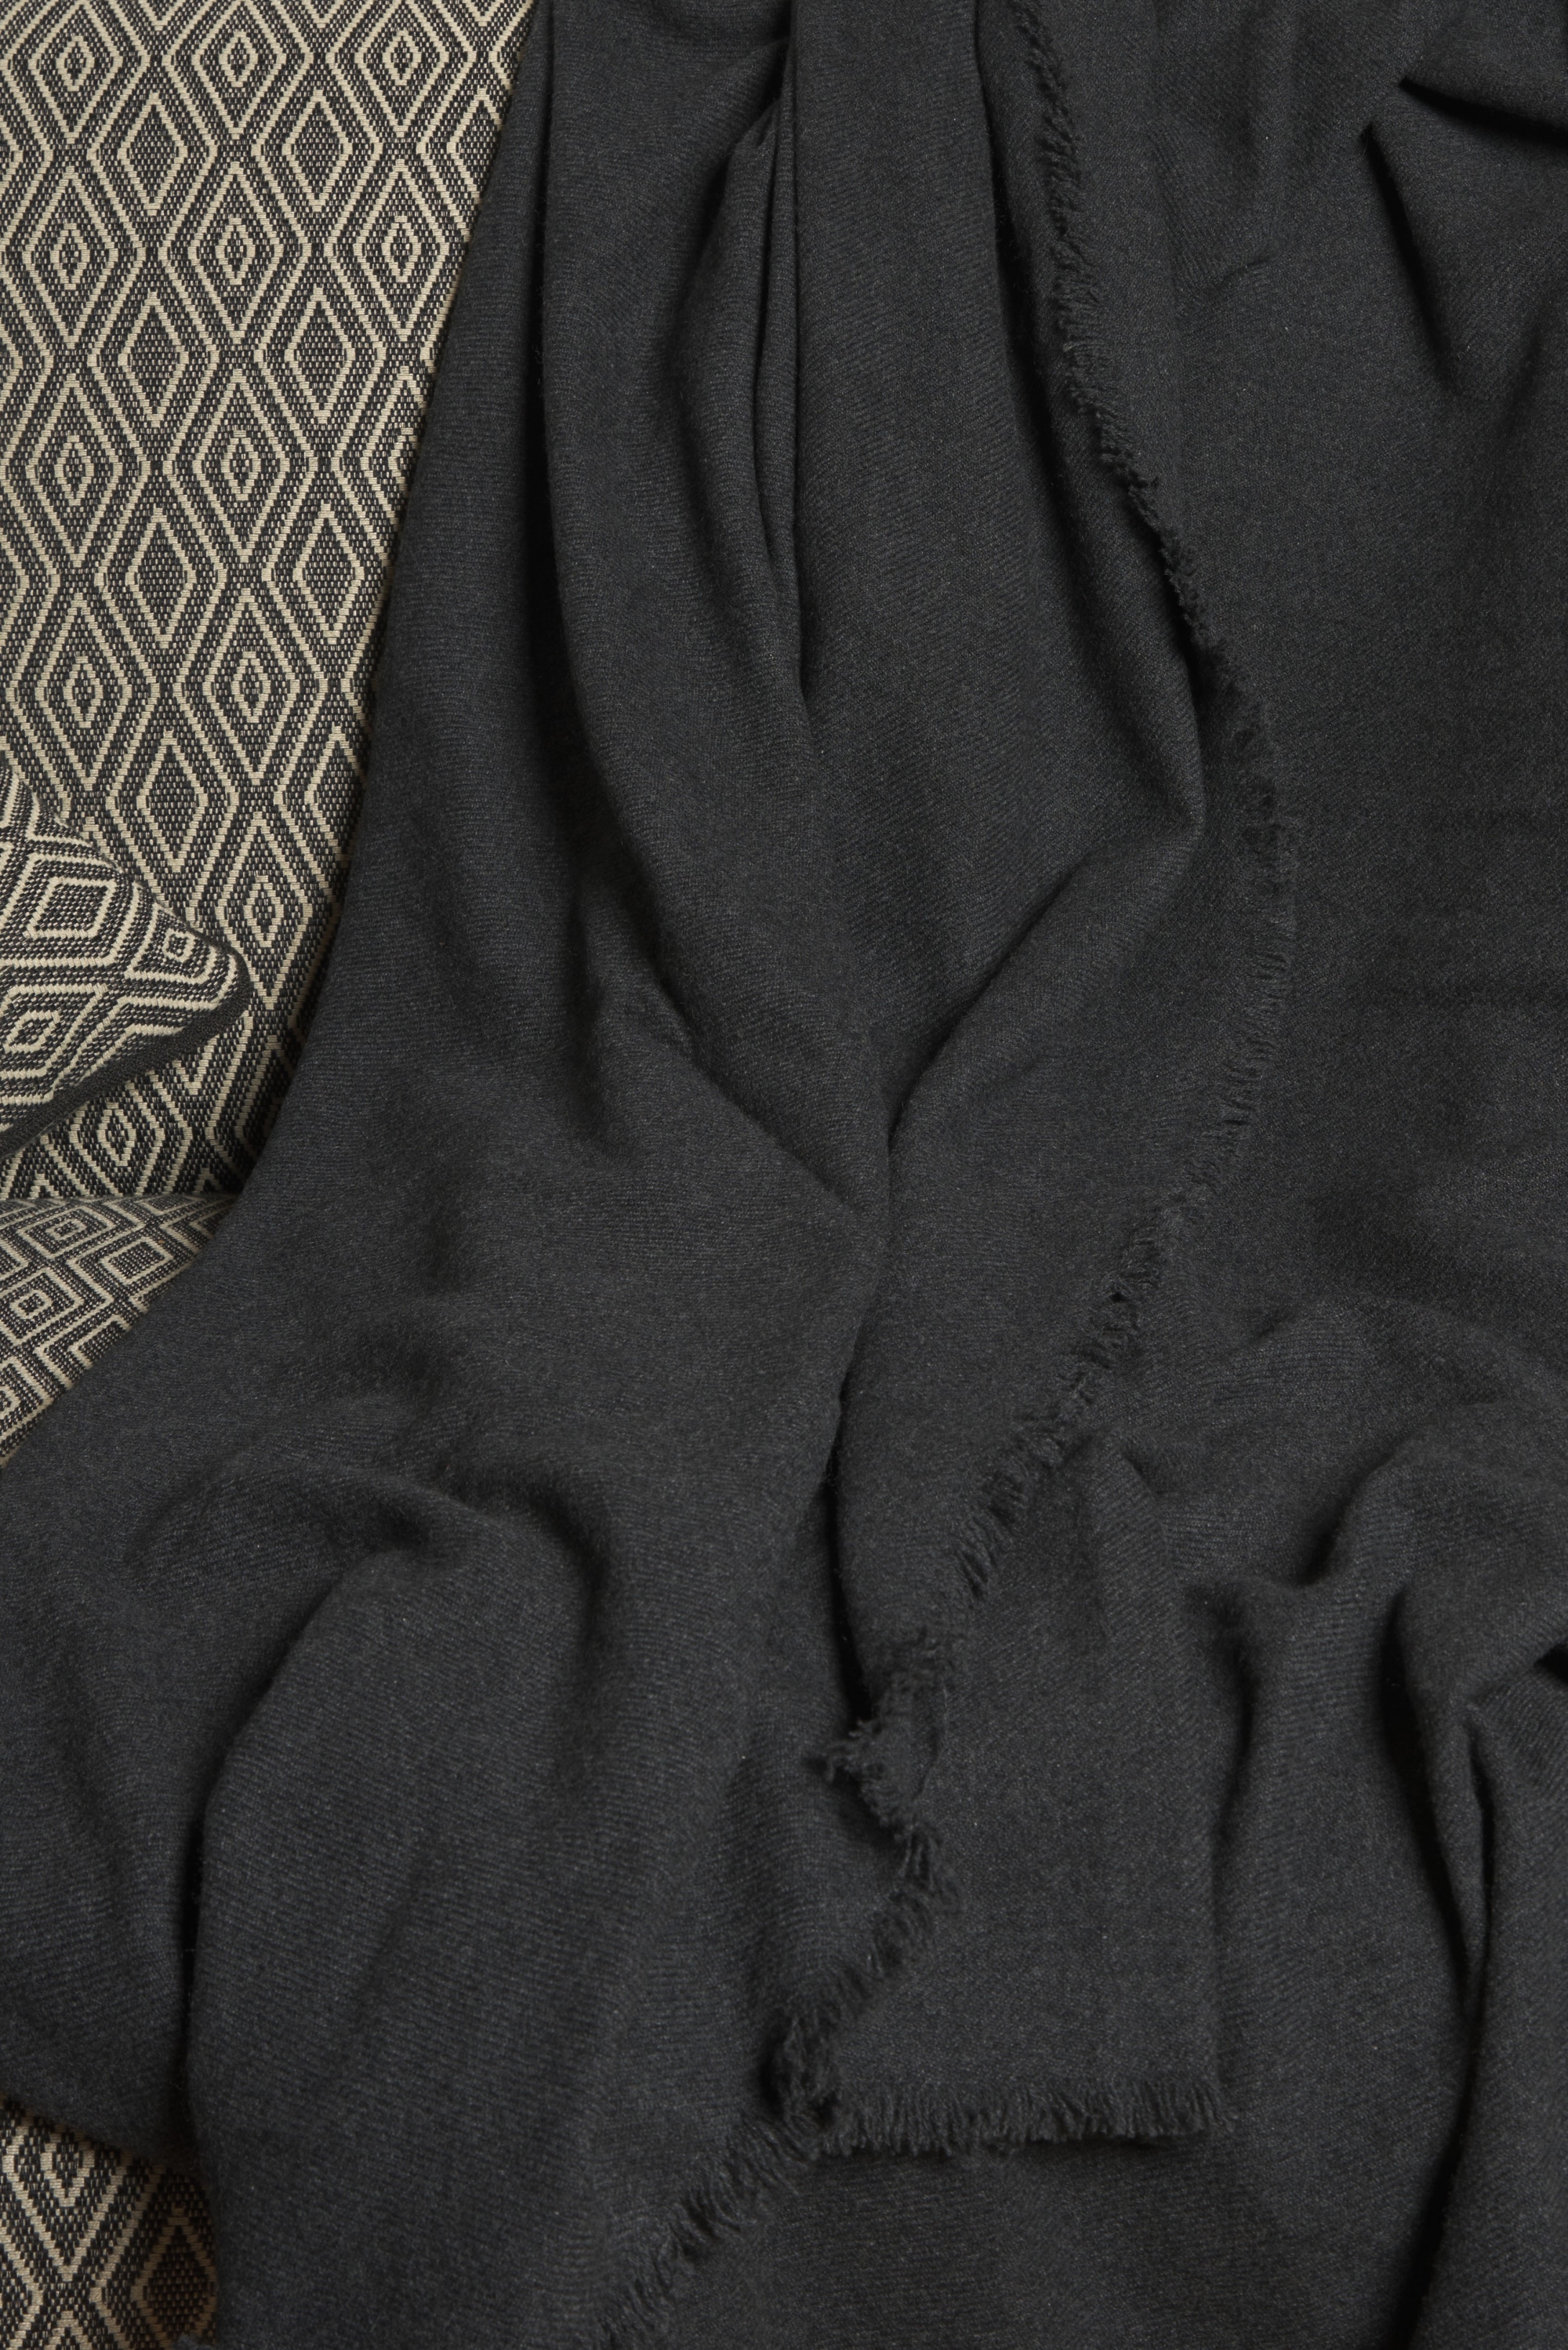 Cashmere accessoires neu toodoo plain s 140 x 200 carbon 140 x 200 cm